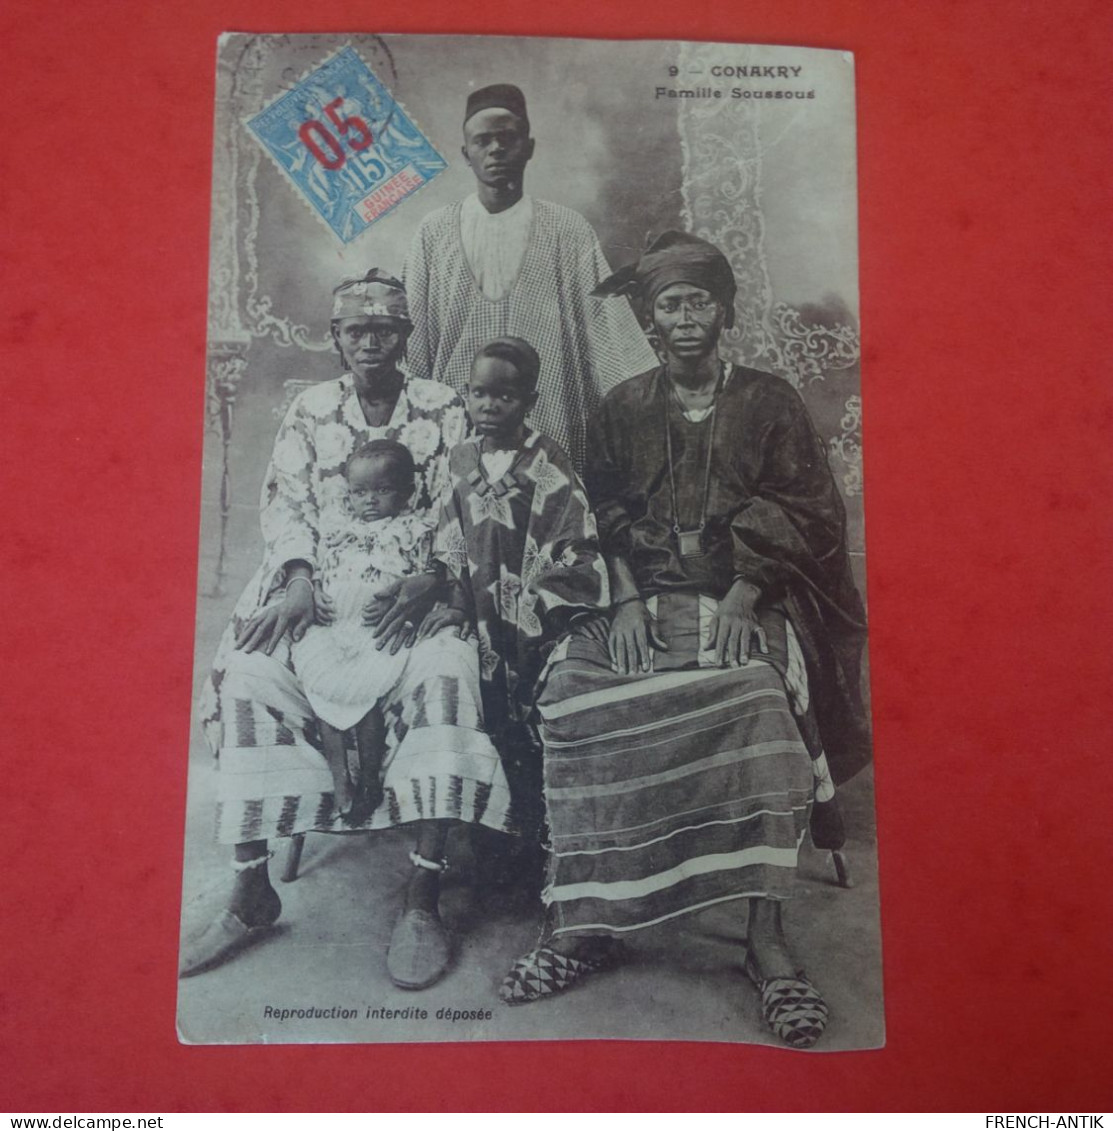 CONAKRY FAMILLE SOUSSOUS - Guinée Française